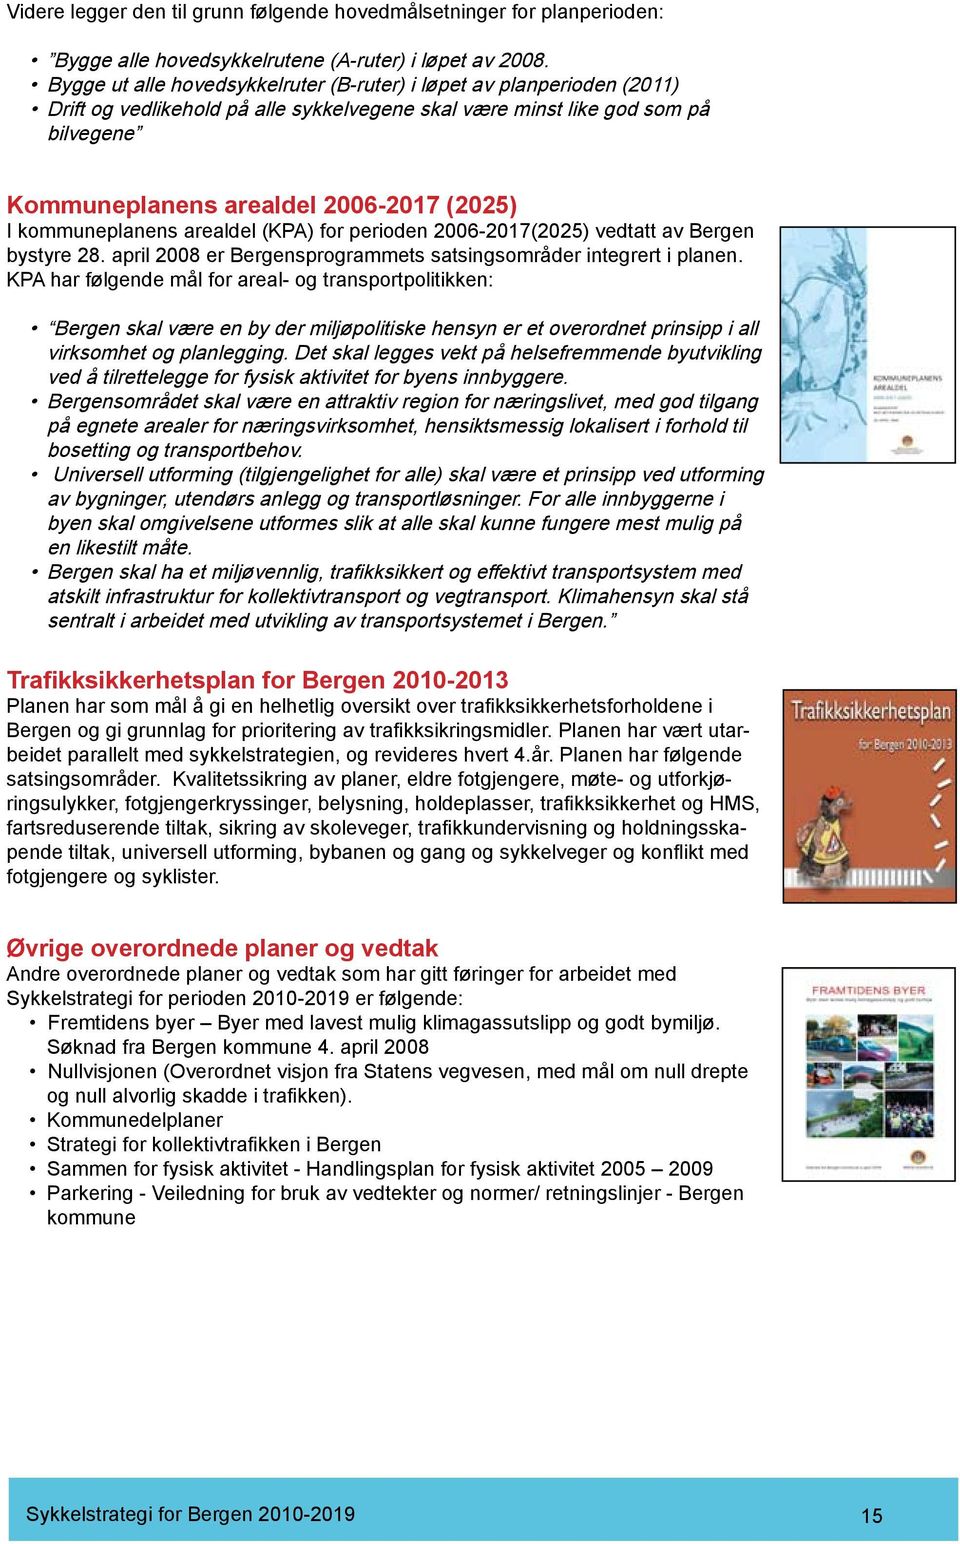 kommuneplanens arealdel (KPA) for perioden 2006-2017(2025) vedtatt av Bergen bystyre 28. april 2008 er Bergensprogrammets satsingsområder integrert i planen.